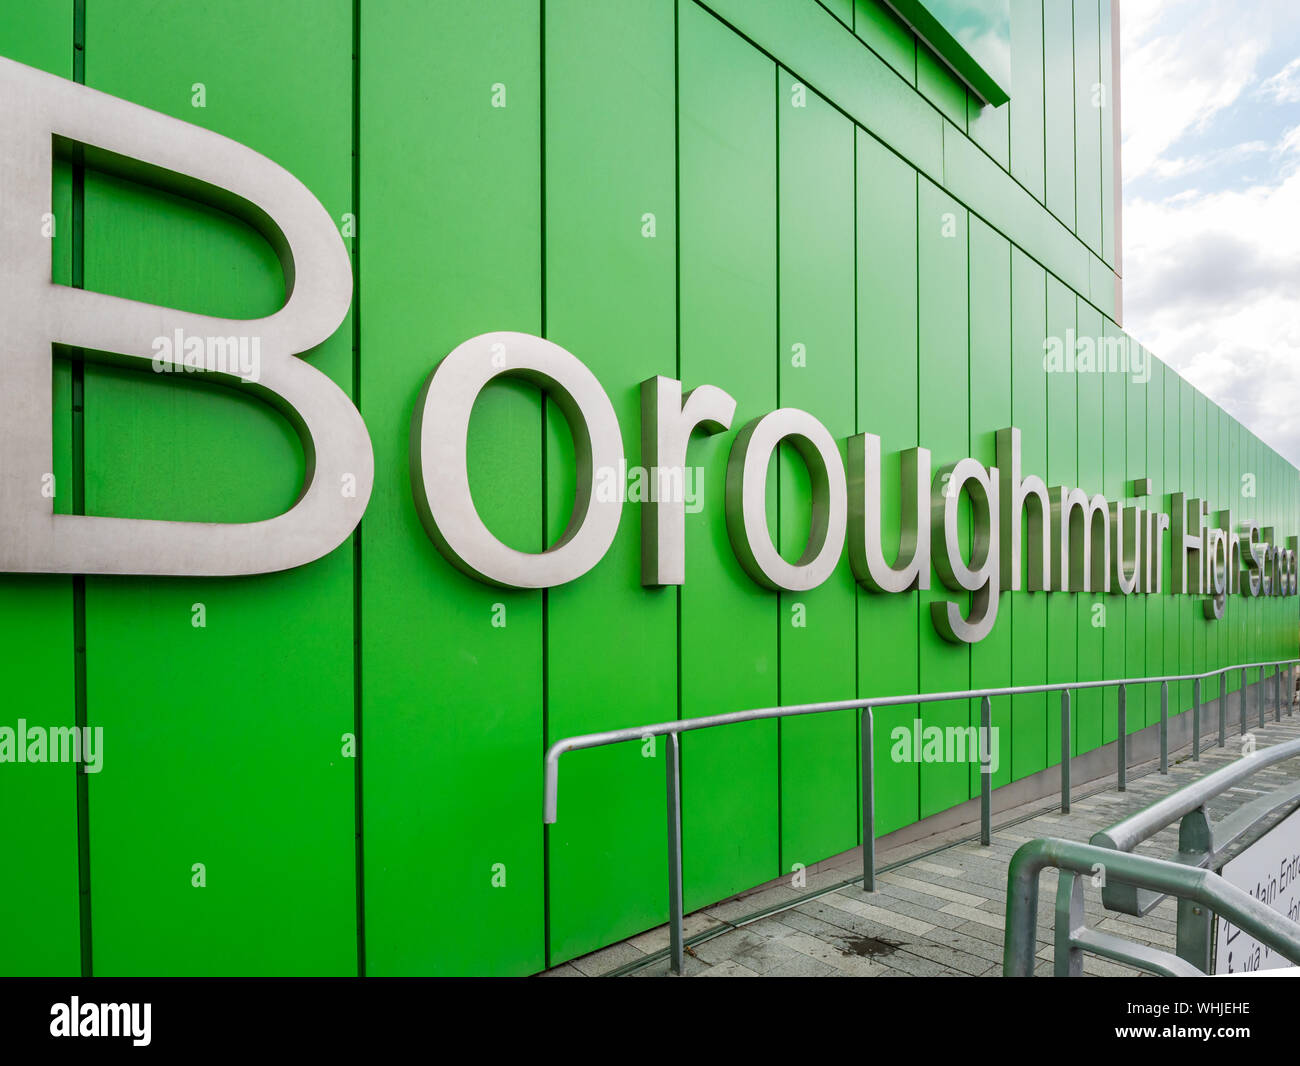 Boroughmuir High School avec un nom audacieux, nouveau bâtiment scolaire ouvert en 2018, Fountainbridge, Édimbourg, Écosse, Royaume-Uni Banque D'Images